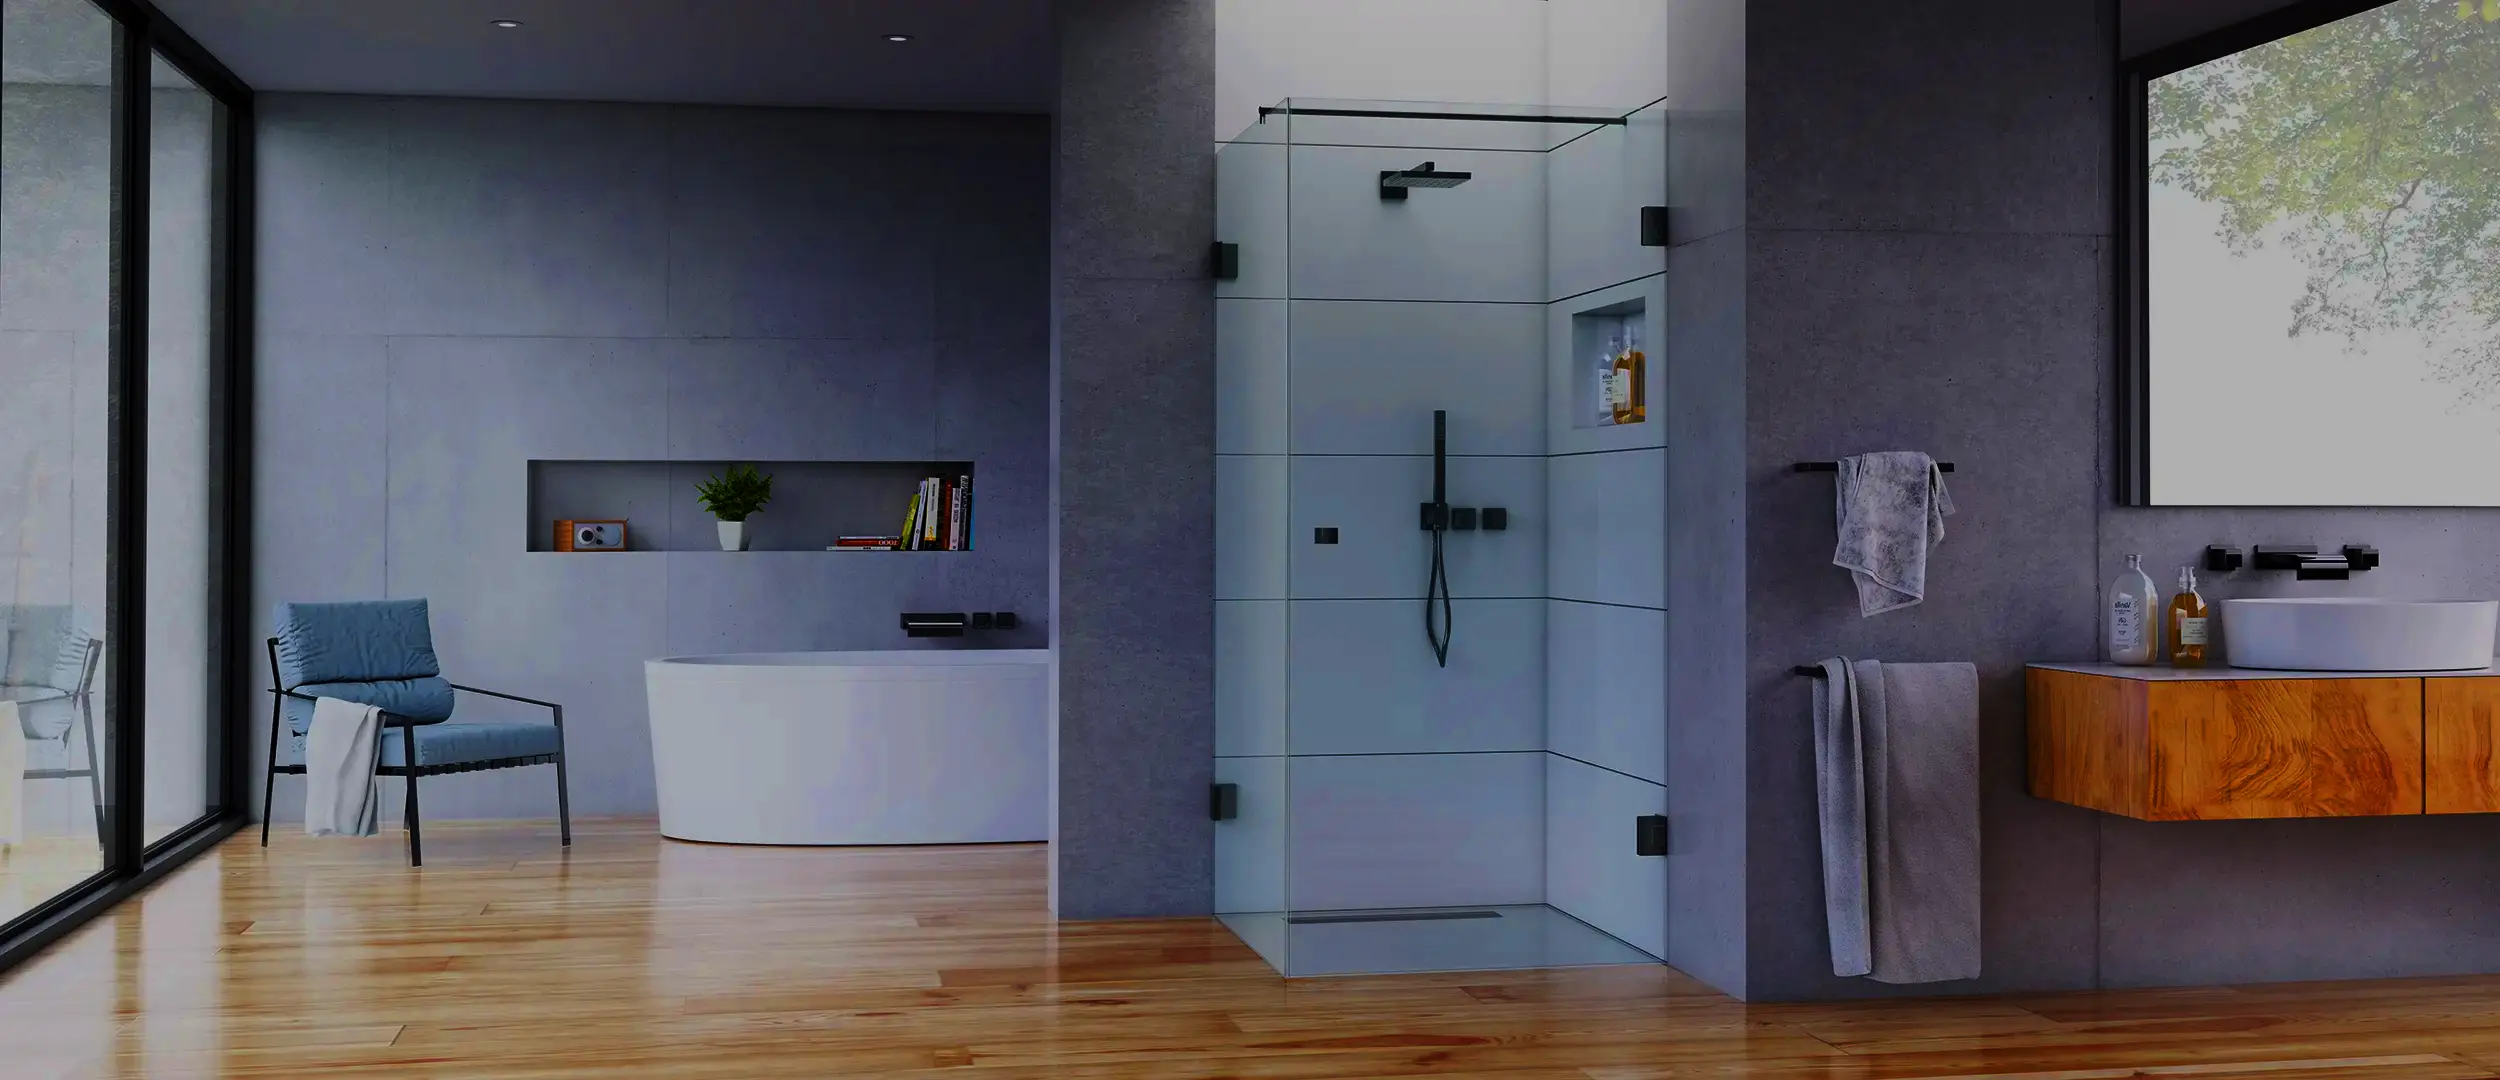 Entdecken Sie unser Duschkabine für einer modernes stilvollen Badezimmer. Genießen Sie den Komfort und die Eleganz dieses Raumes, der speziell für Ihr ultimatives Duscherlebnis entwickelt wurde.